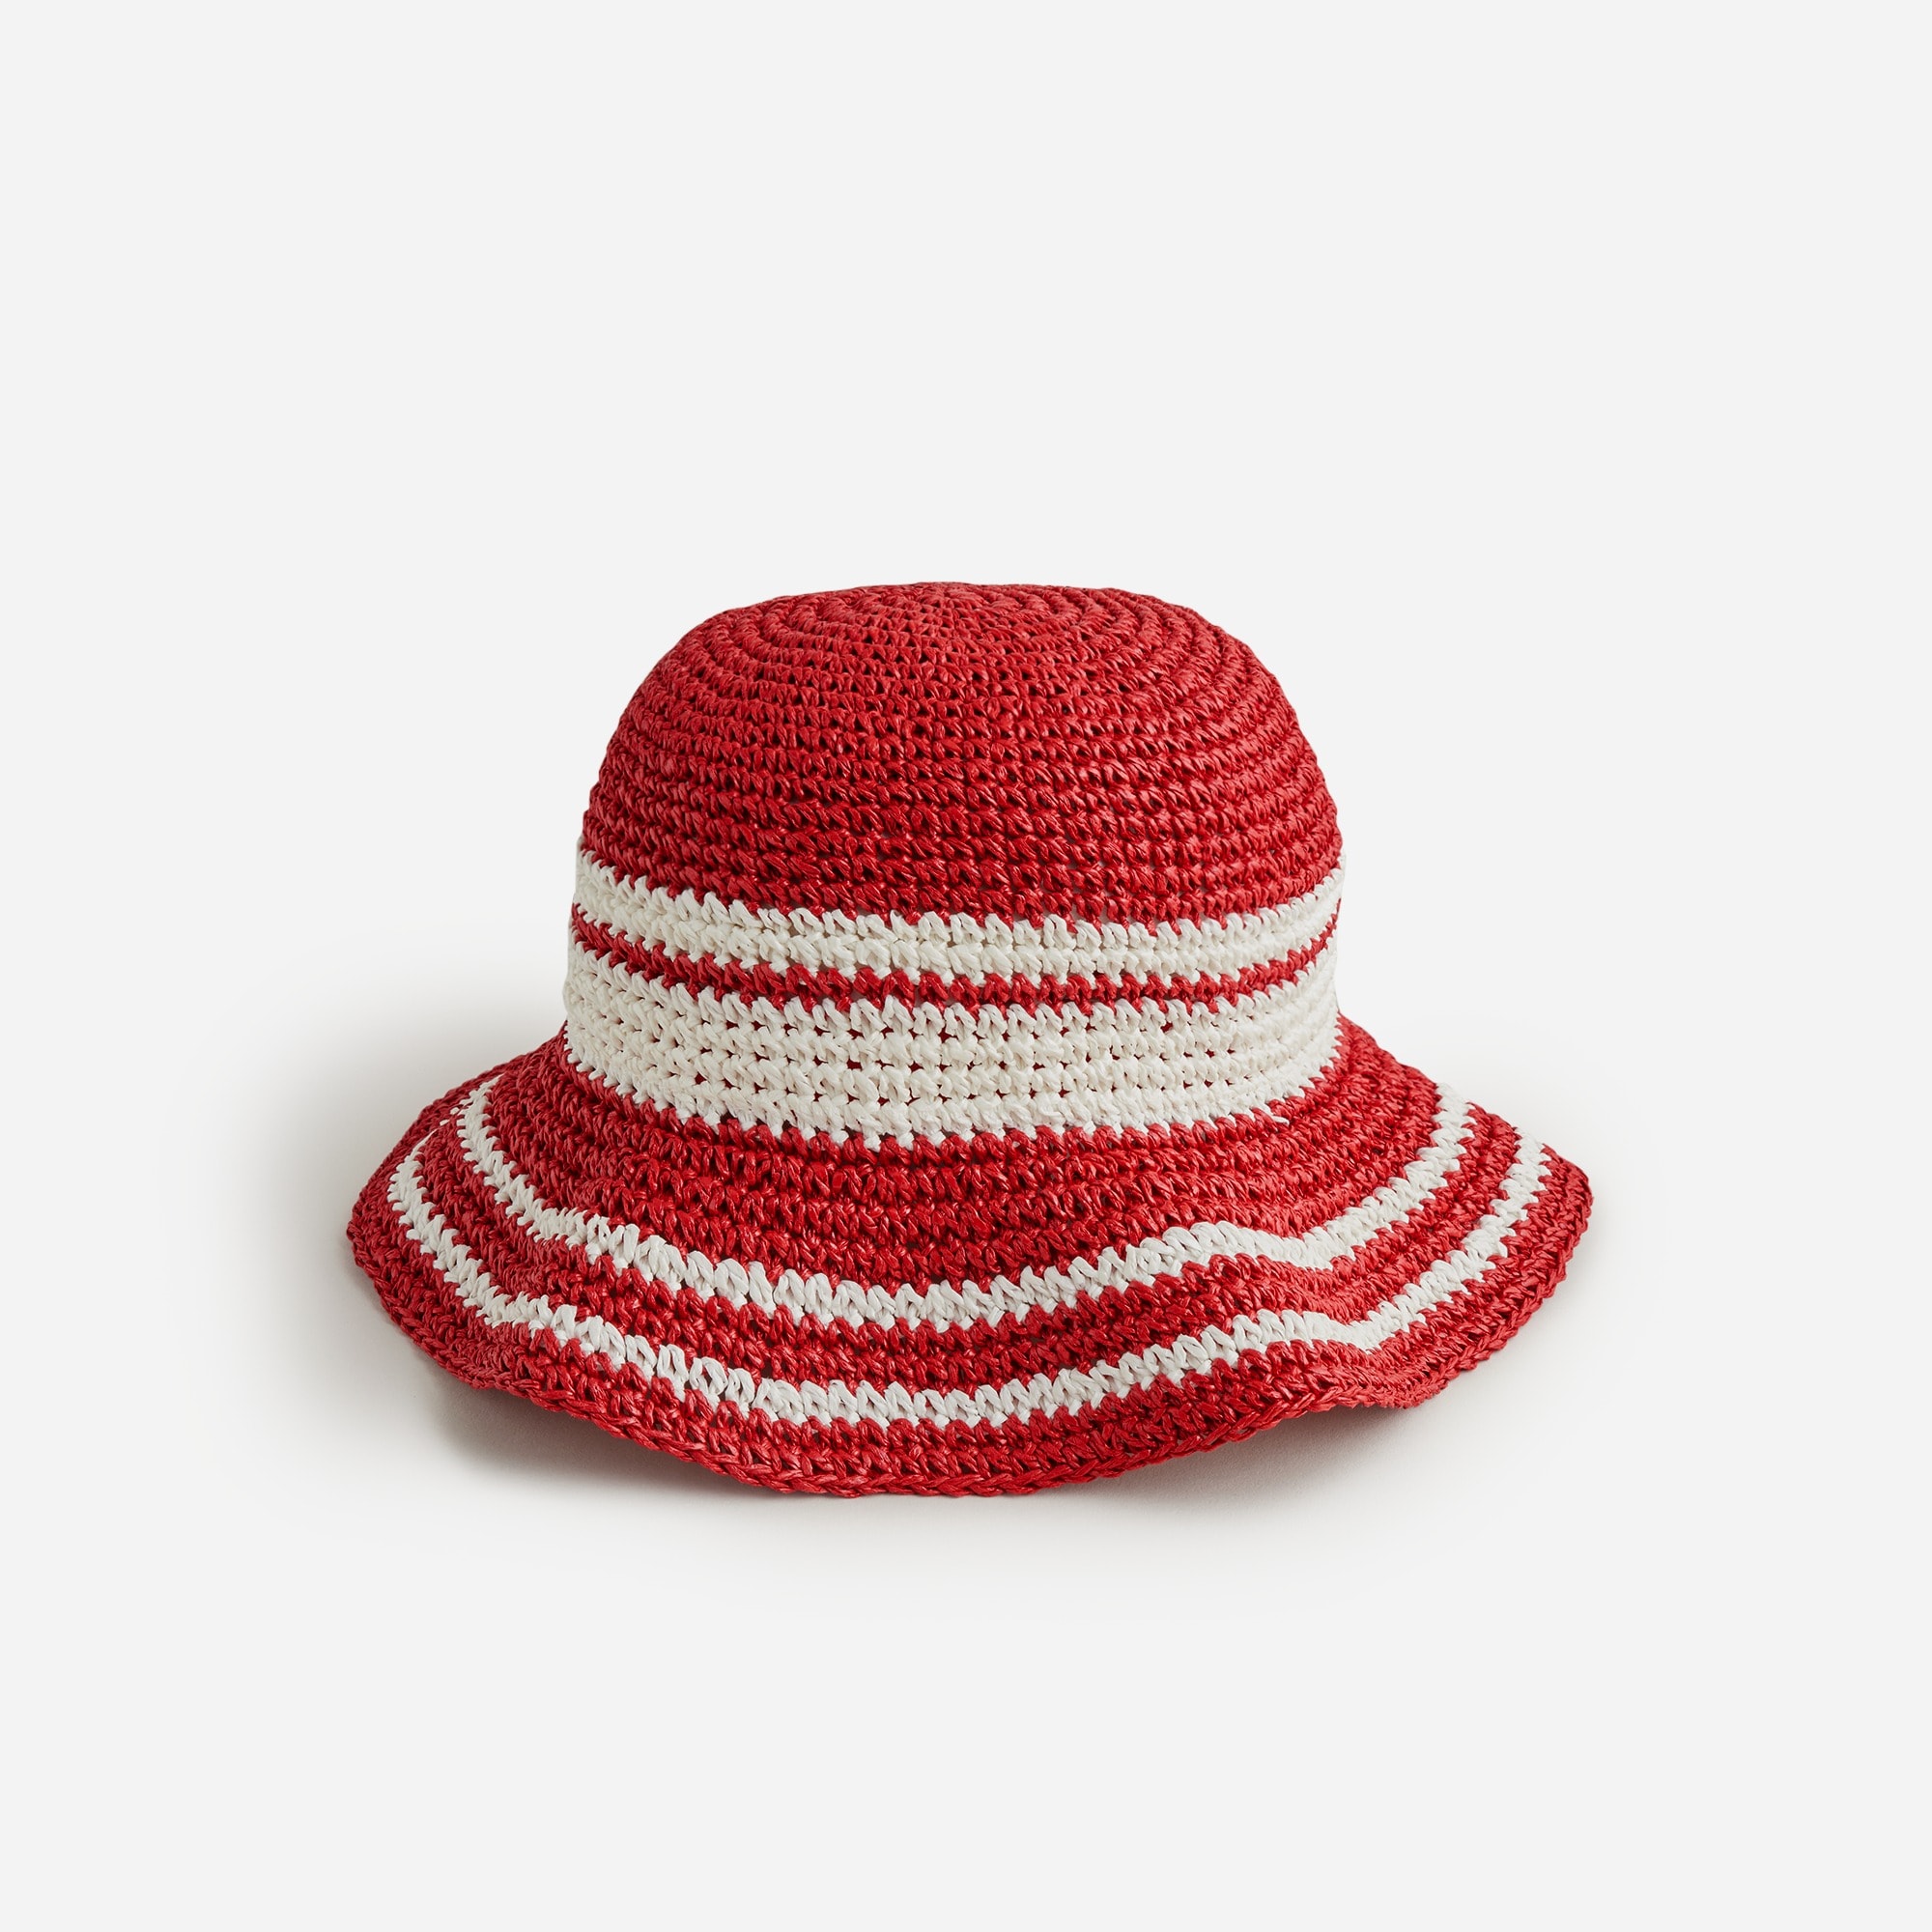 Jcrew Round packable hat in striped faux raffia